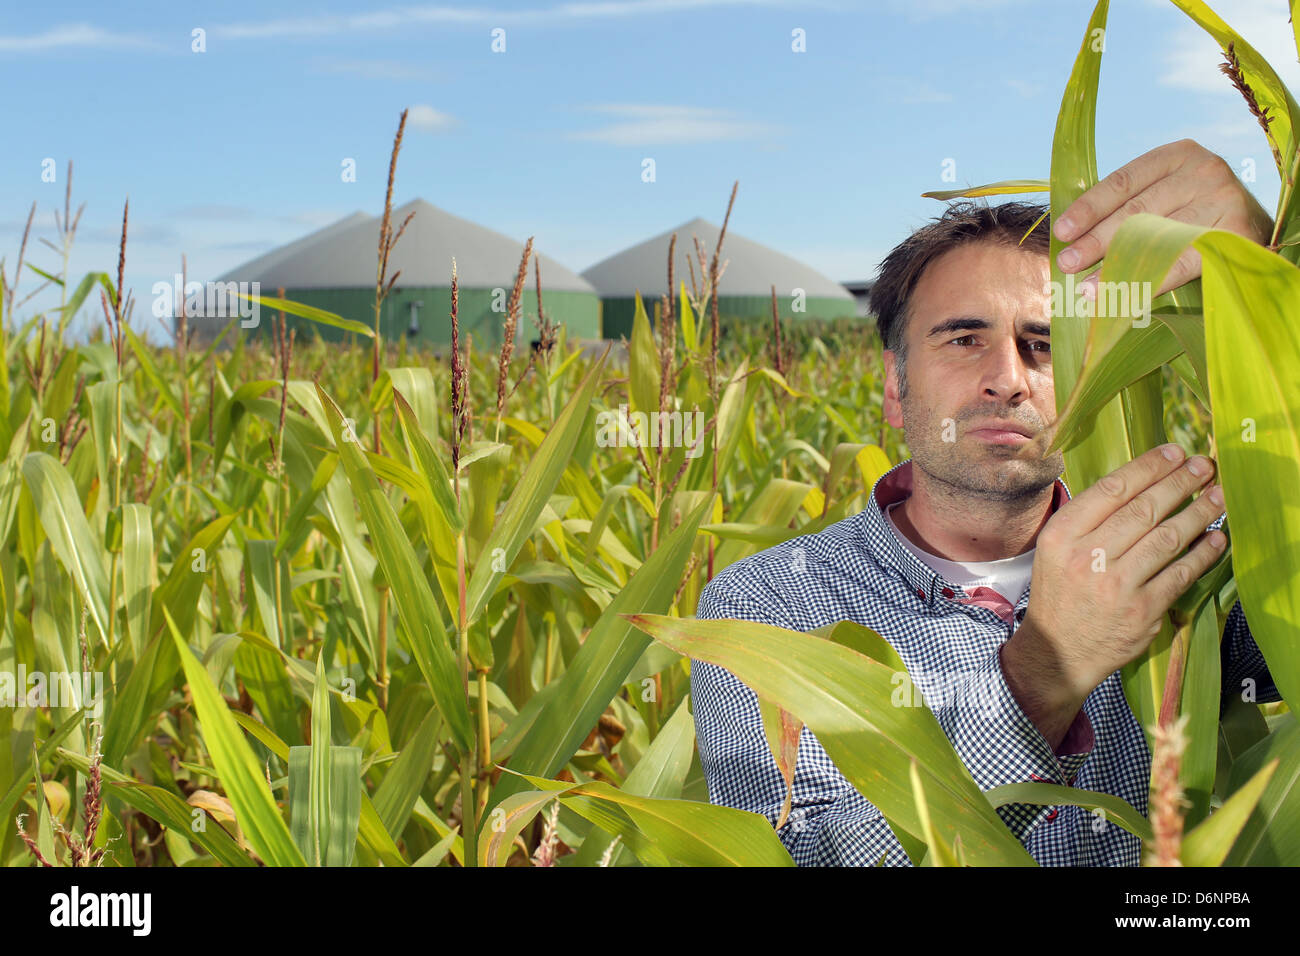 Wees, Allemagne, champ de maïs avec une usine de biogaz Banque D'Images